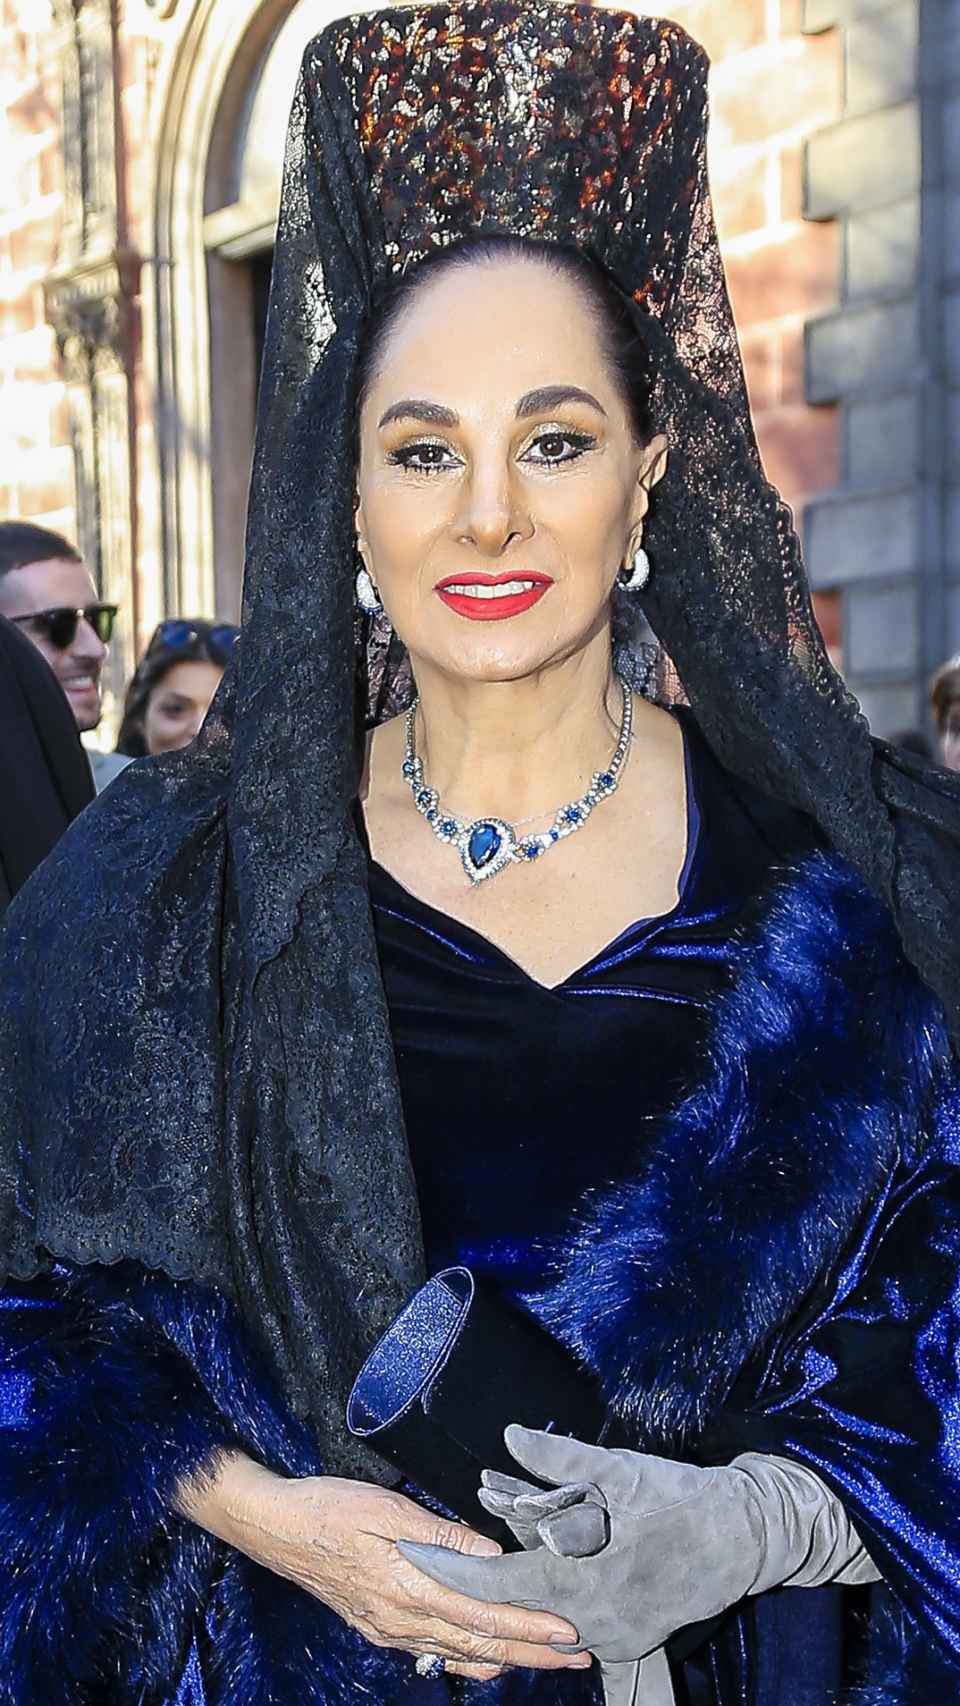 Susana Dosamantes en una fotografía tomada en diciembre de 2017 en Madrid.